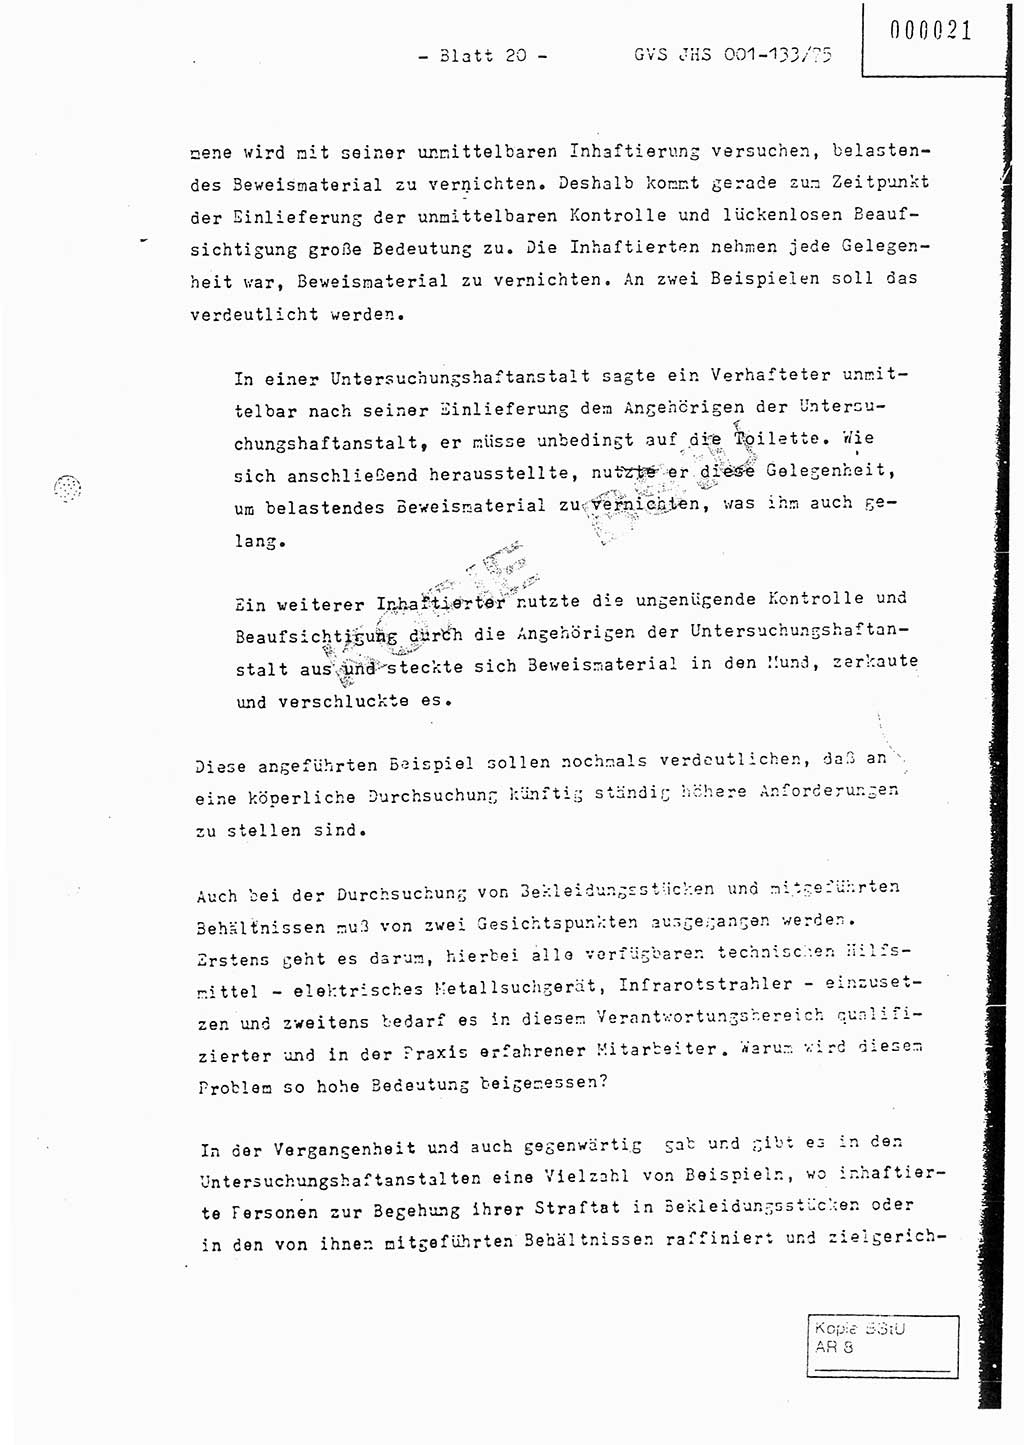 Fachschulabschlußarbeit Major Werner Braun (Abt. ⅩⅣ), Hauptmann Klaus Zeiß (Abt. ⅩⅣ), Ministerium für Staatssicherheit (MfS) [Deutsche Demokratische Republik (DDR)], Juristische Hochschule (JHS), Geheime Verschlußsache (GVS) 001-133/75, Potsdam 1976, Blatt 20 (FS-Abschl.-Arb. MfS DDR JHS GVS 001-133/75 1976, Bl. 20)